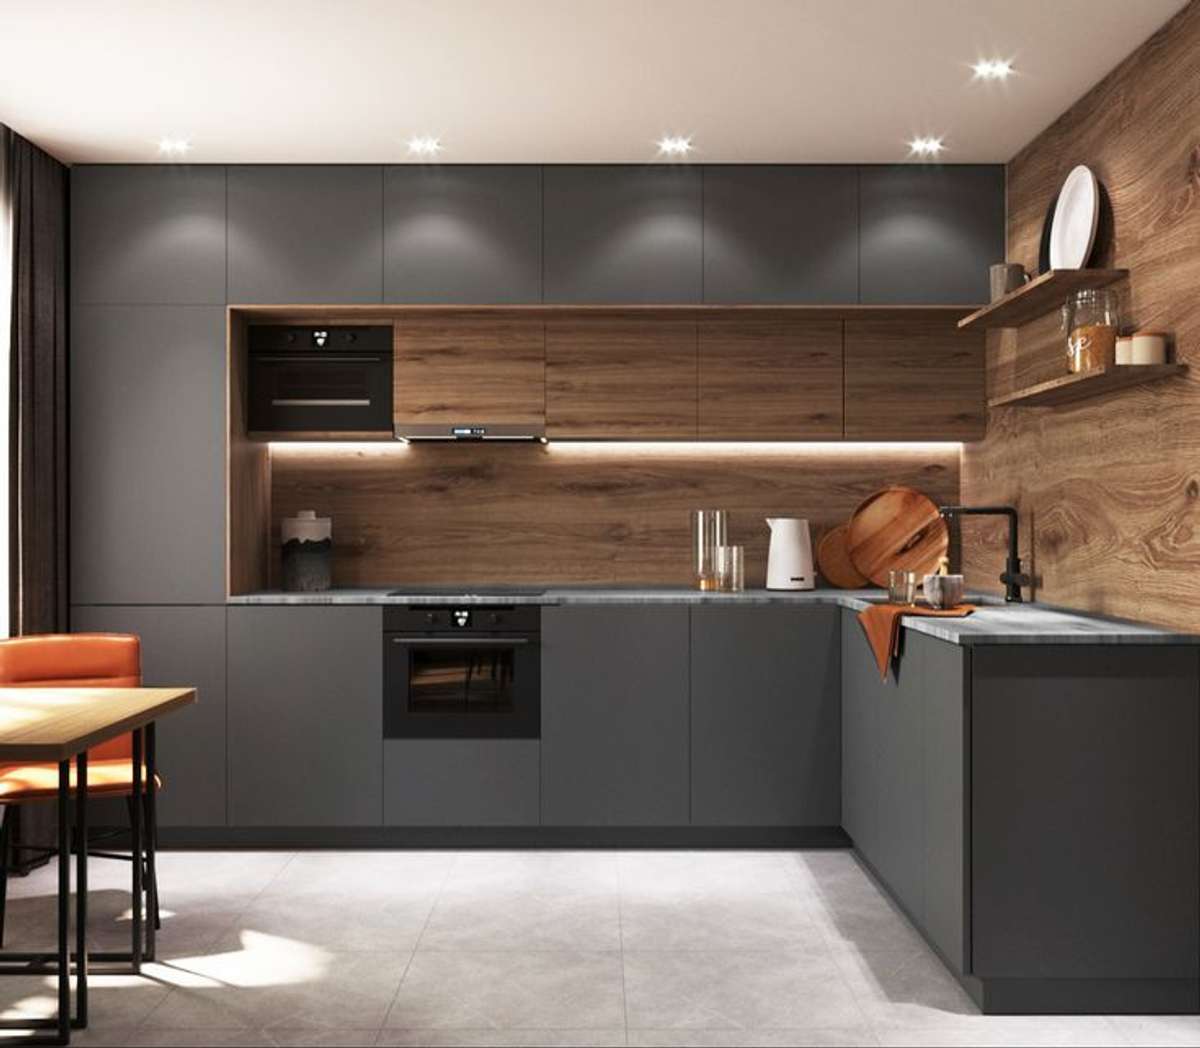 Kitchen, Lighting, Storage Designs by Interior Designer SPIRA concept  interiors, Thrissur | Kolo